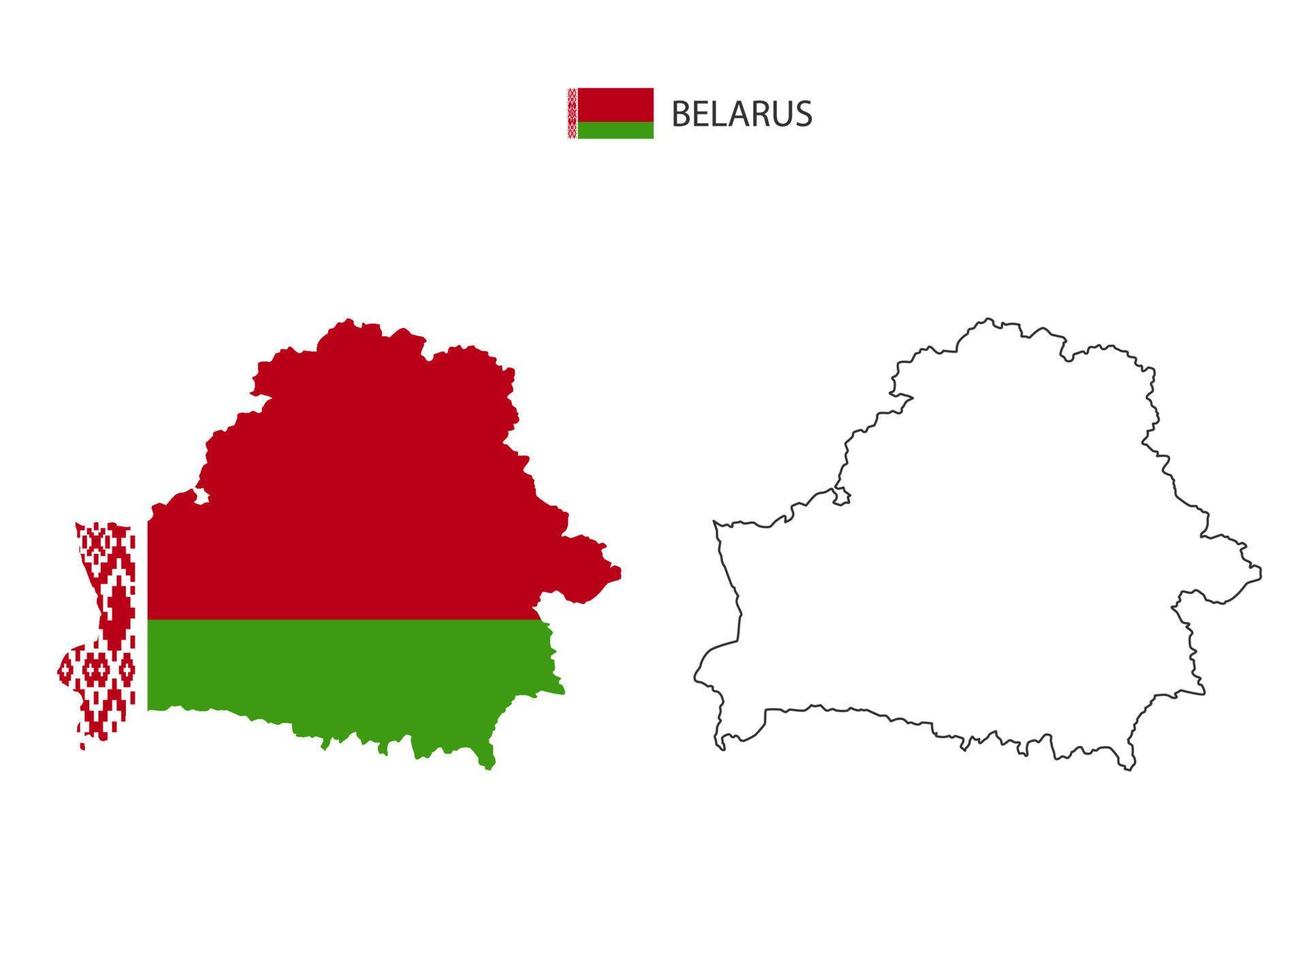 vetor da cidade do mapa da bielorrússia dividido pelo estilo de simplicidade do contorno. tem 2 versões, versão de linha fina preta e cor da versão da bandeira do país. ambos os mapas estavam no fundo branco.